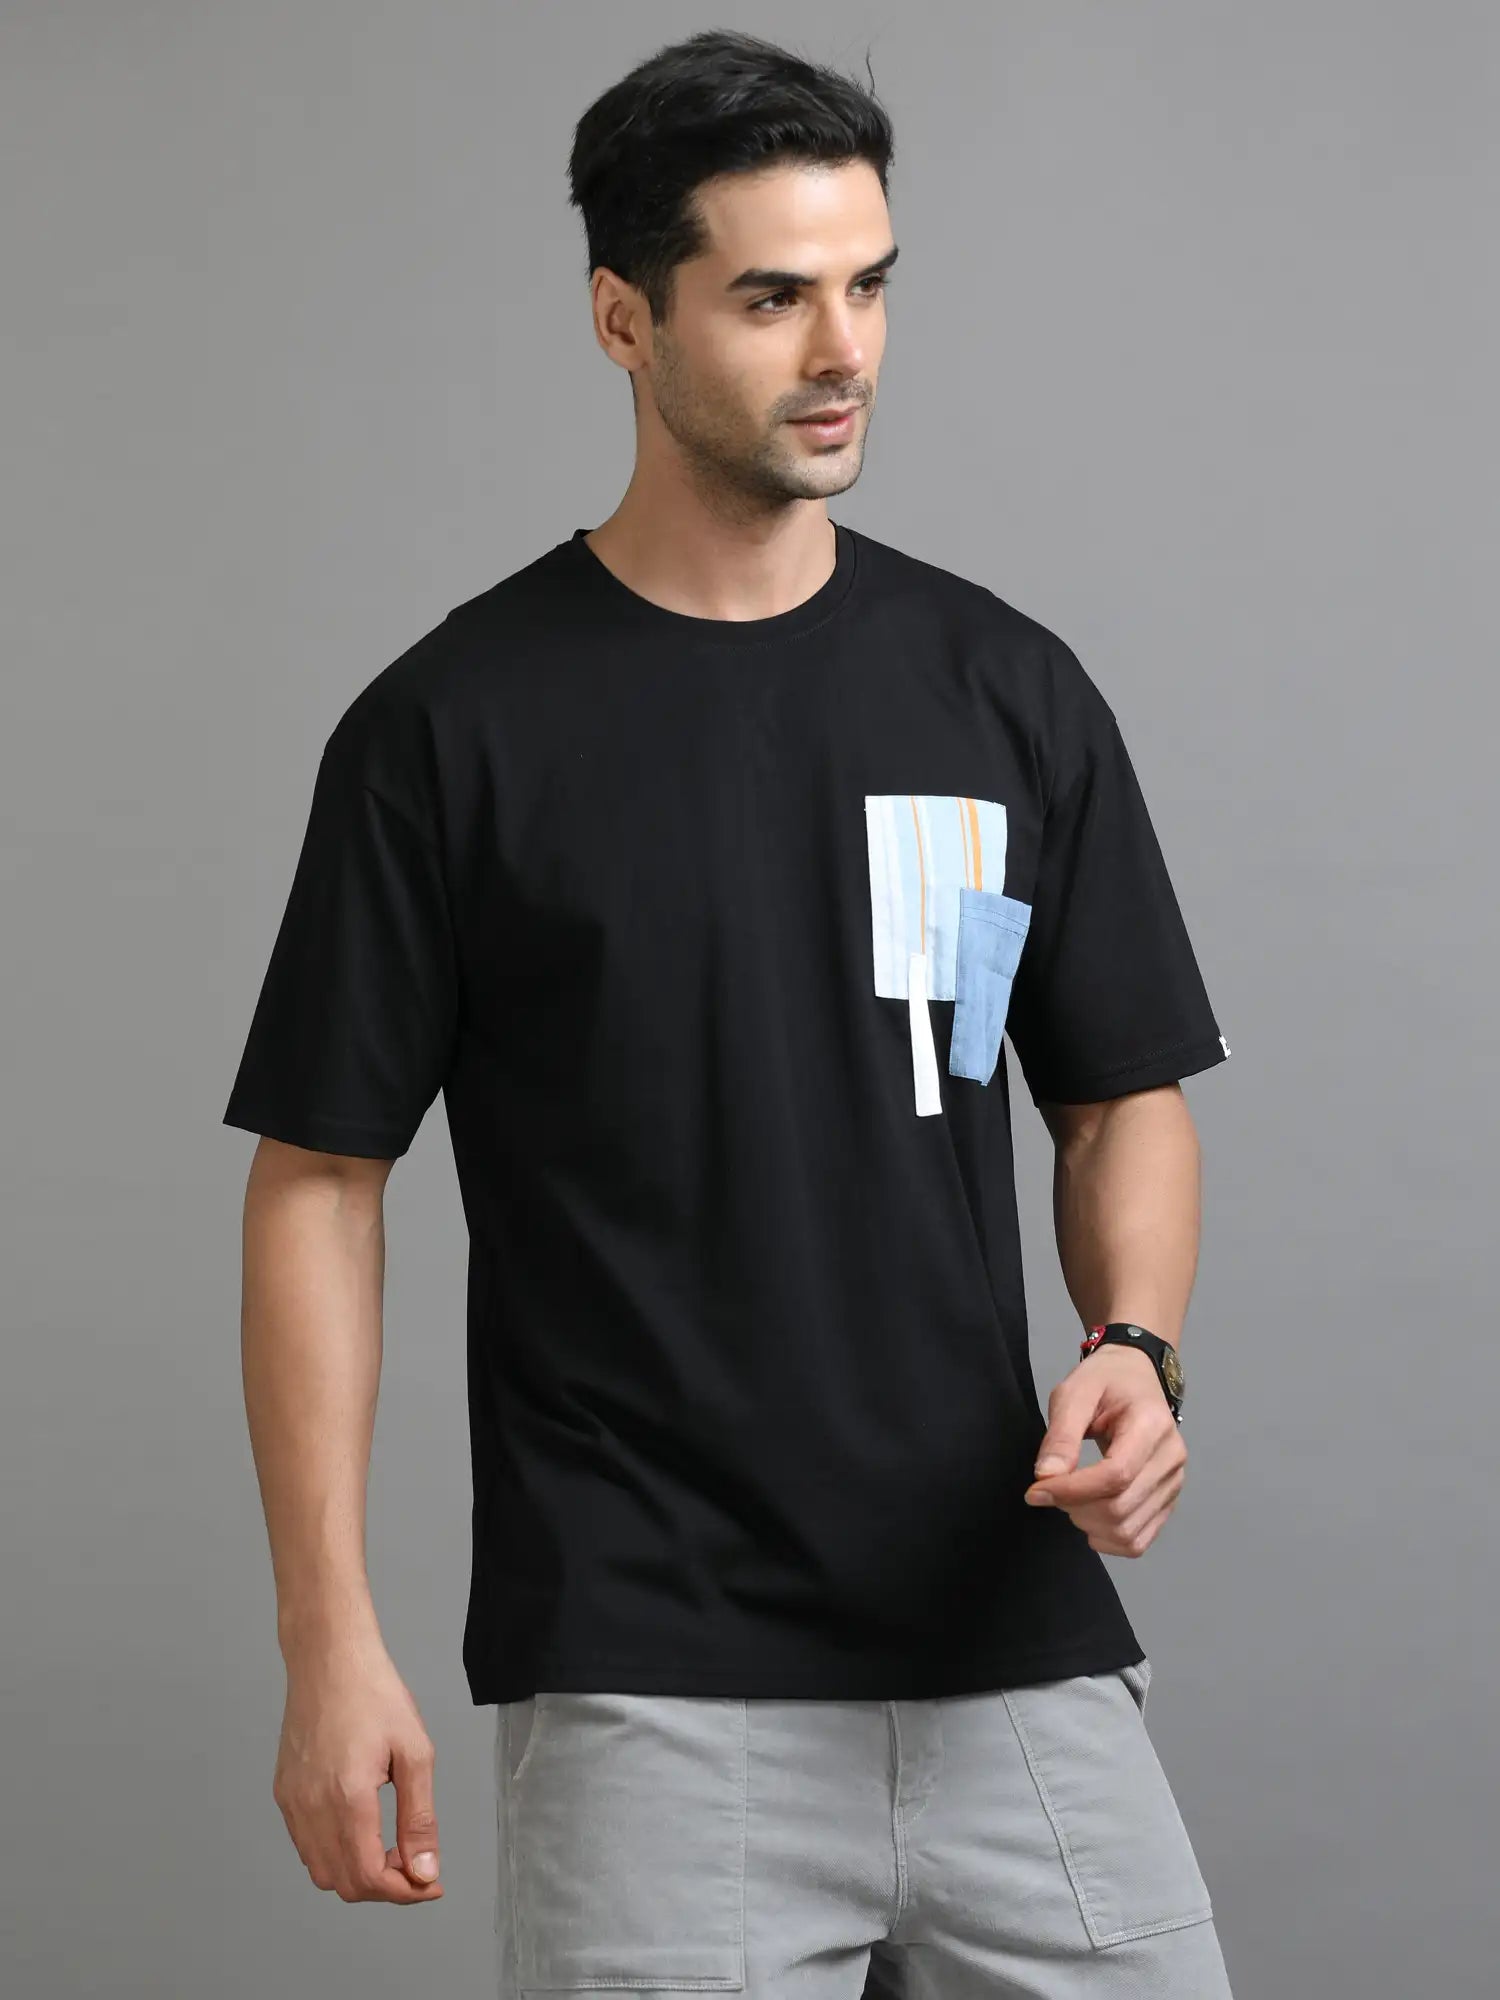 Black Drop Shoulder T Shirt for Men